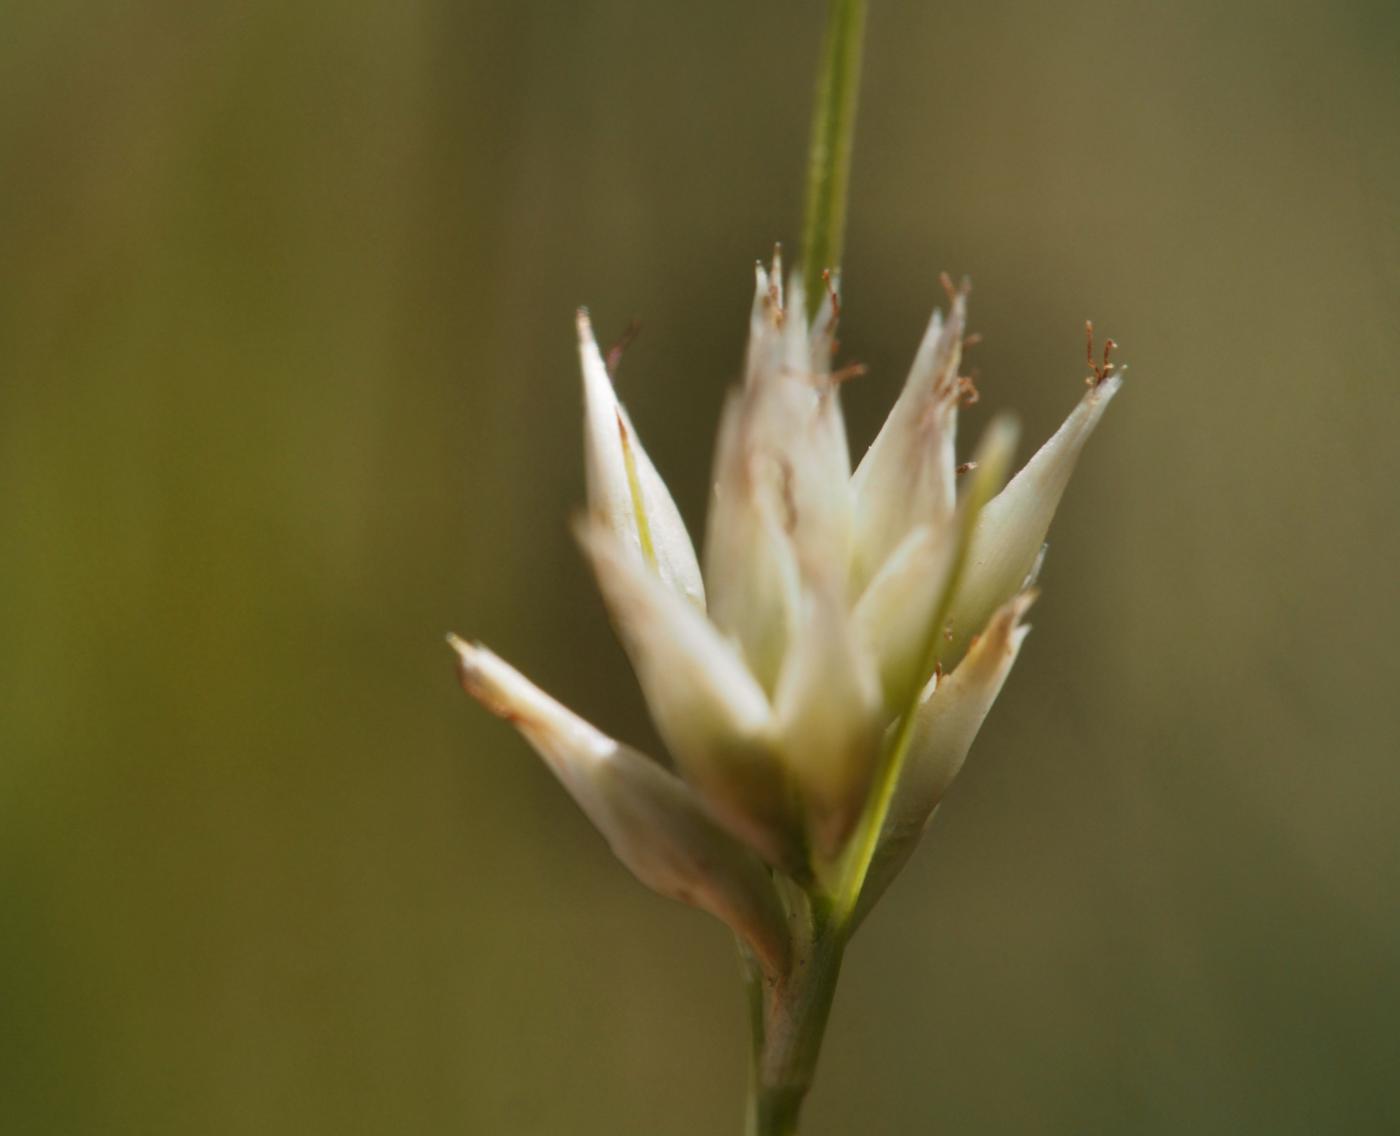 Beak-sedge, White flower